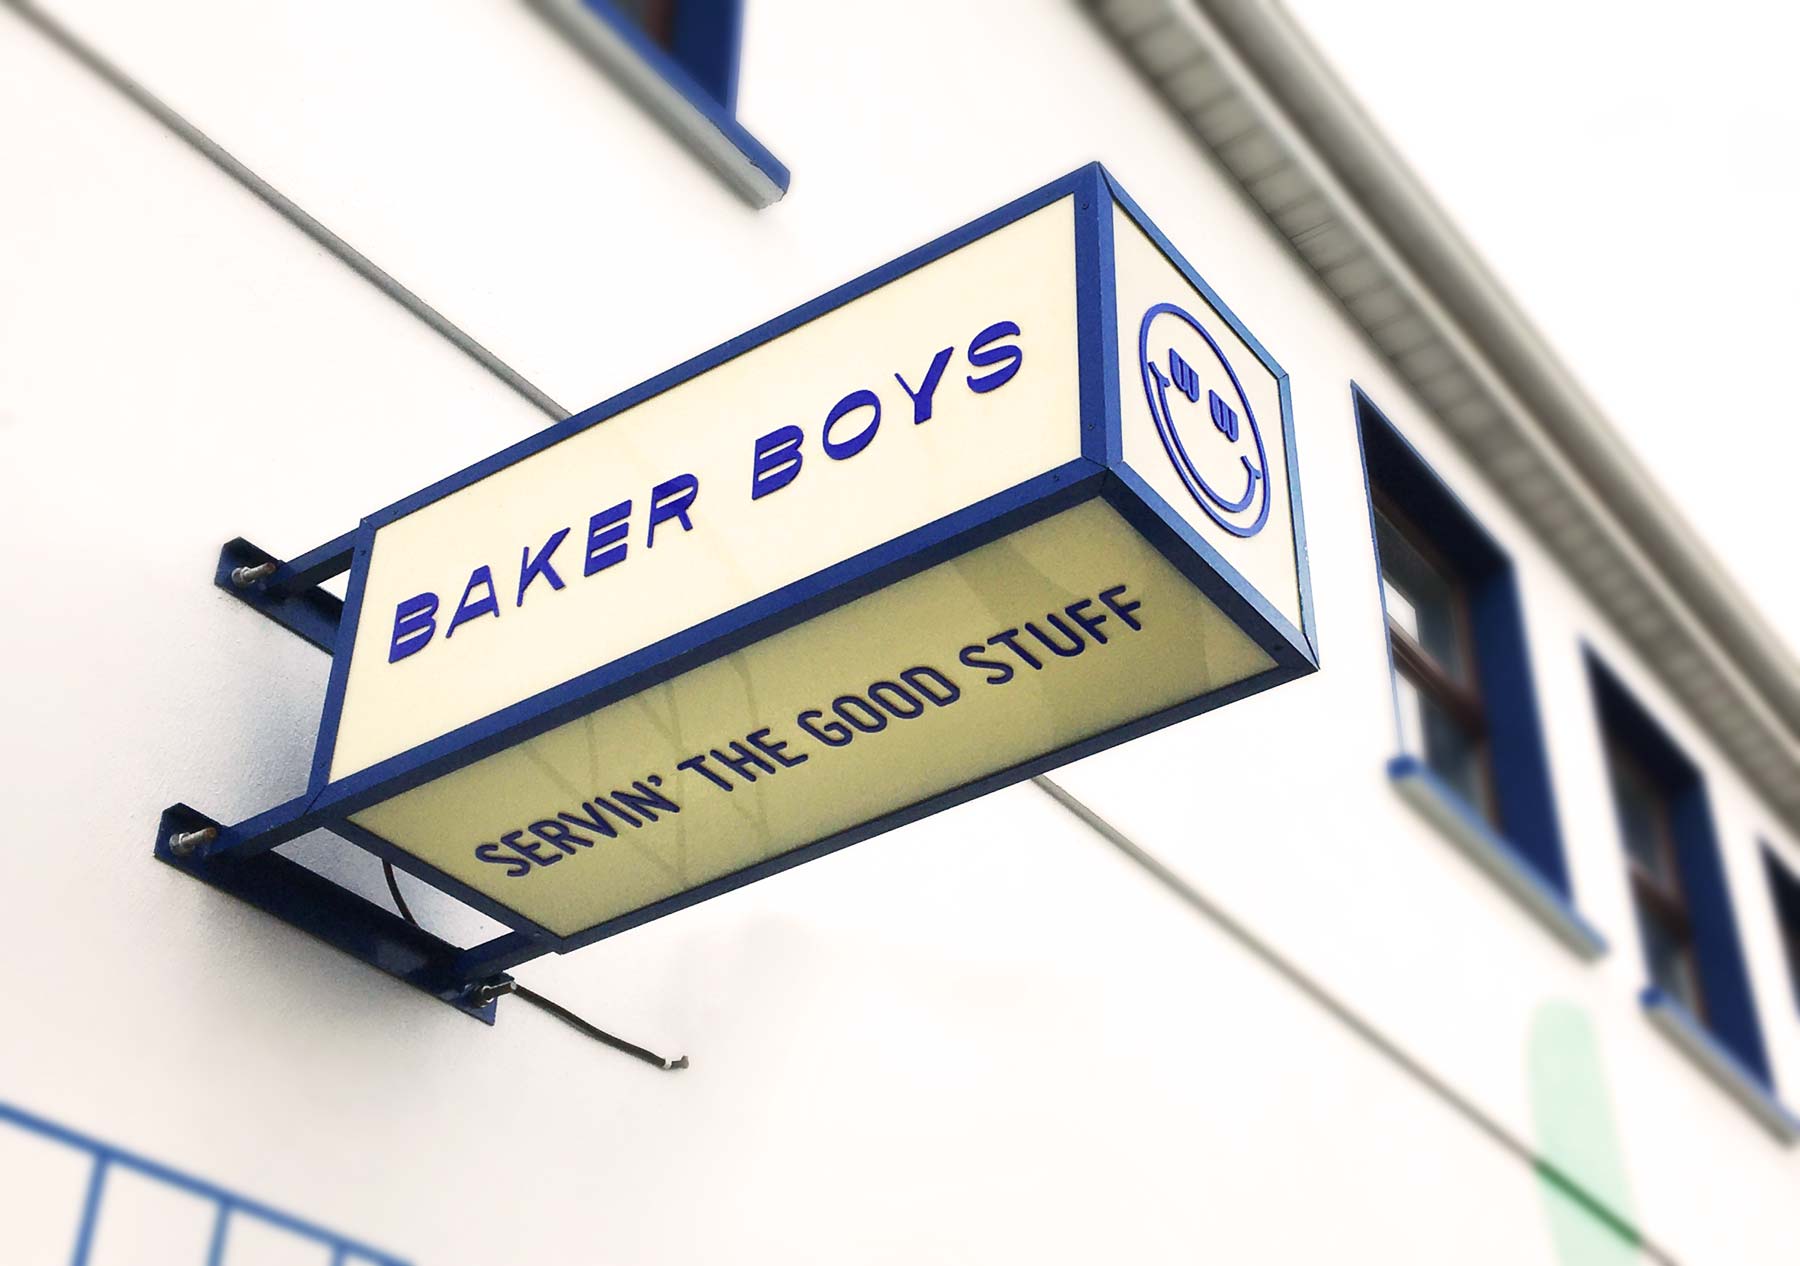 Baker Boys Sligo  revert design